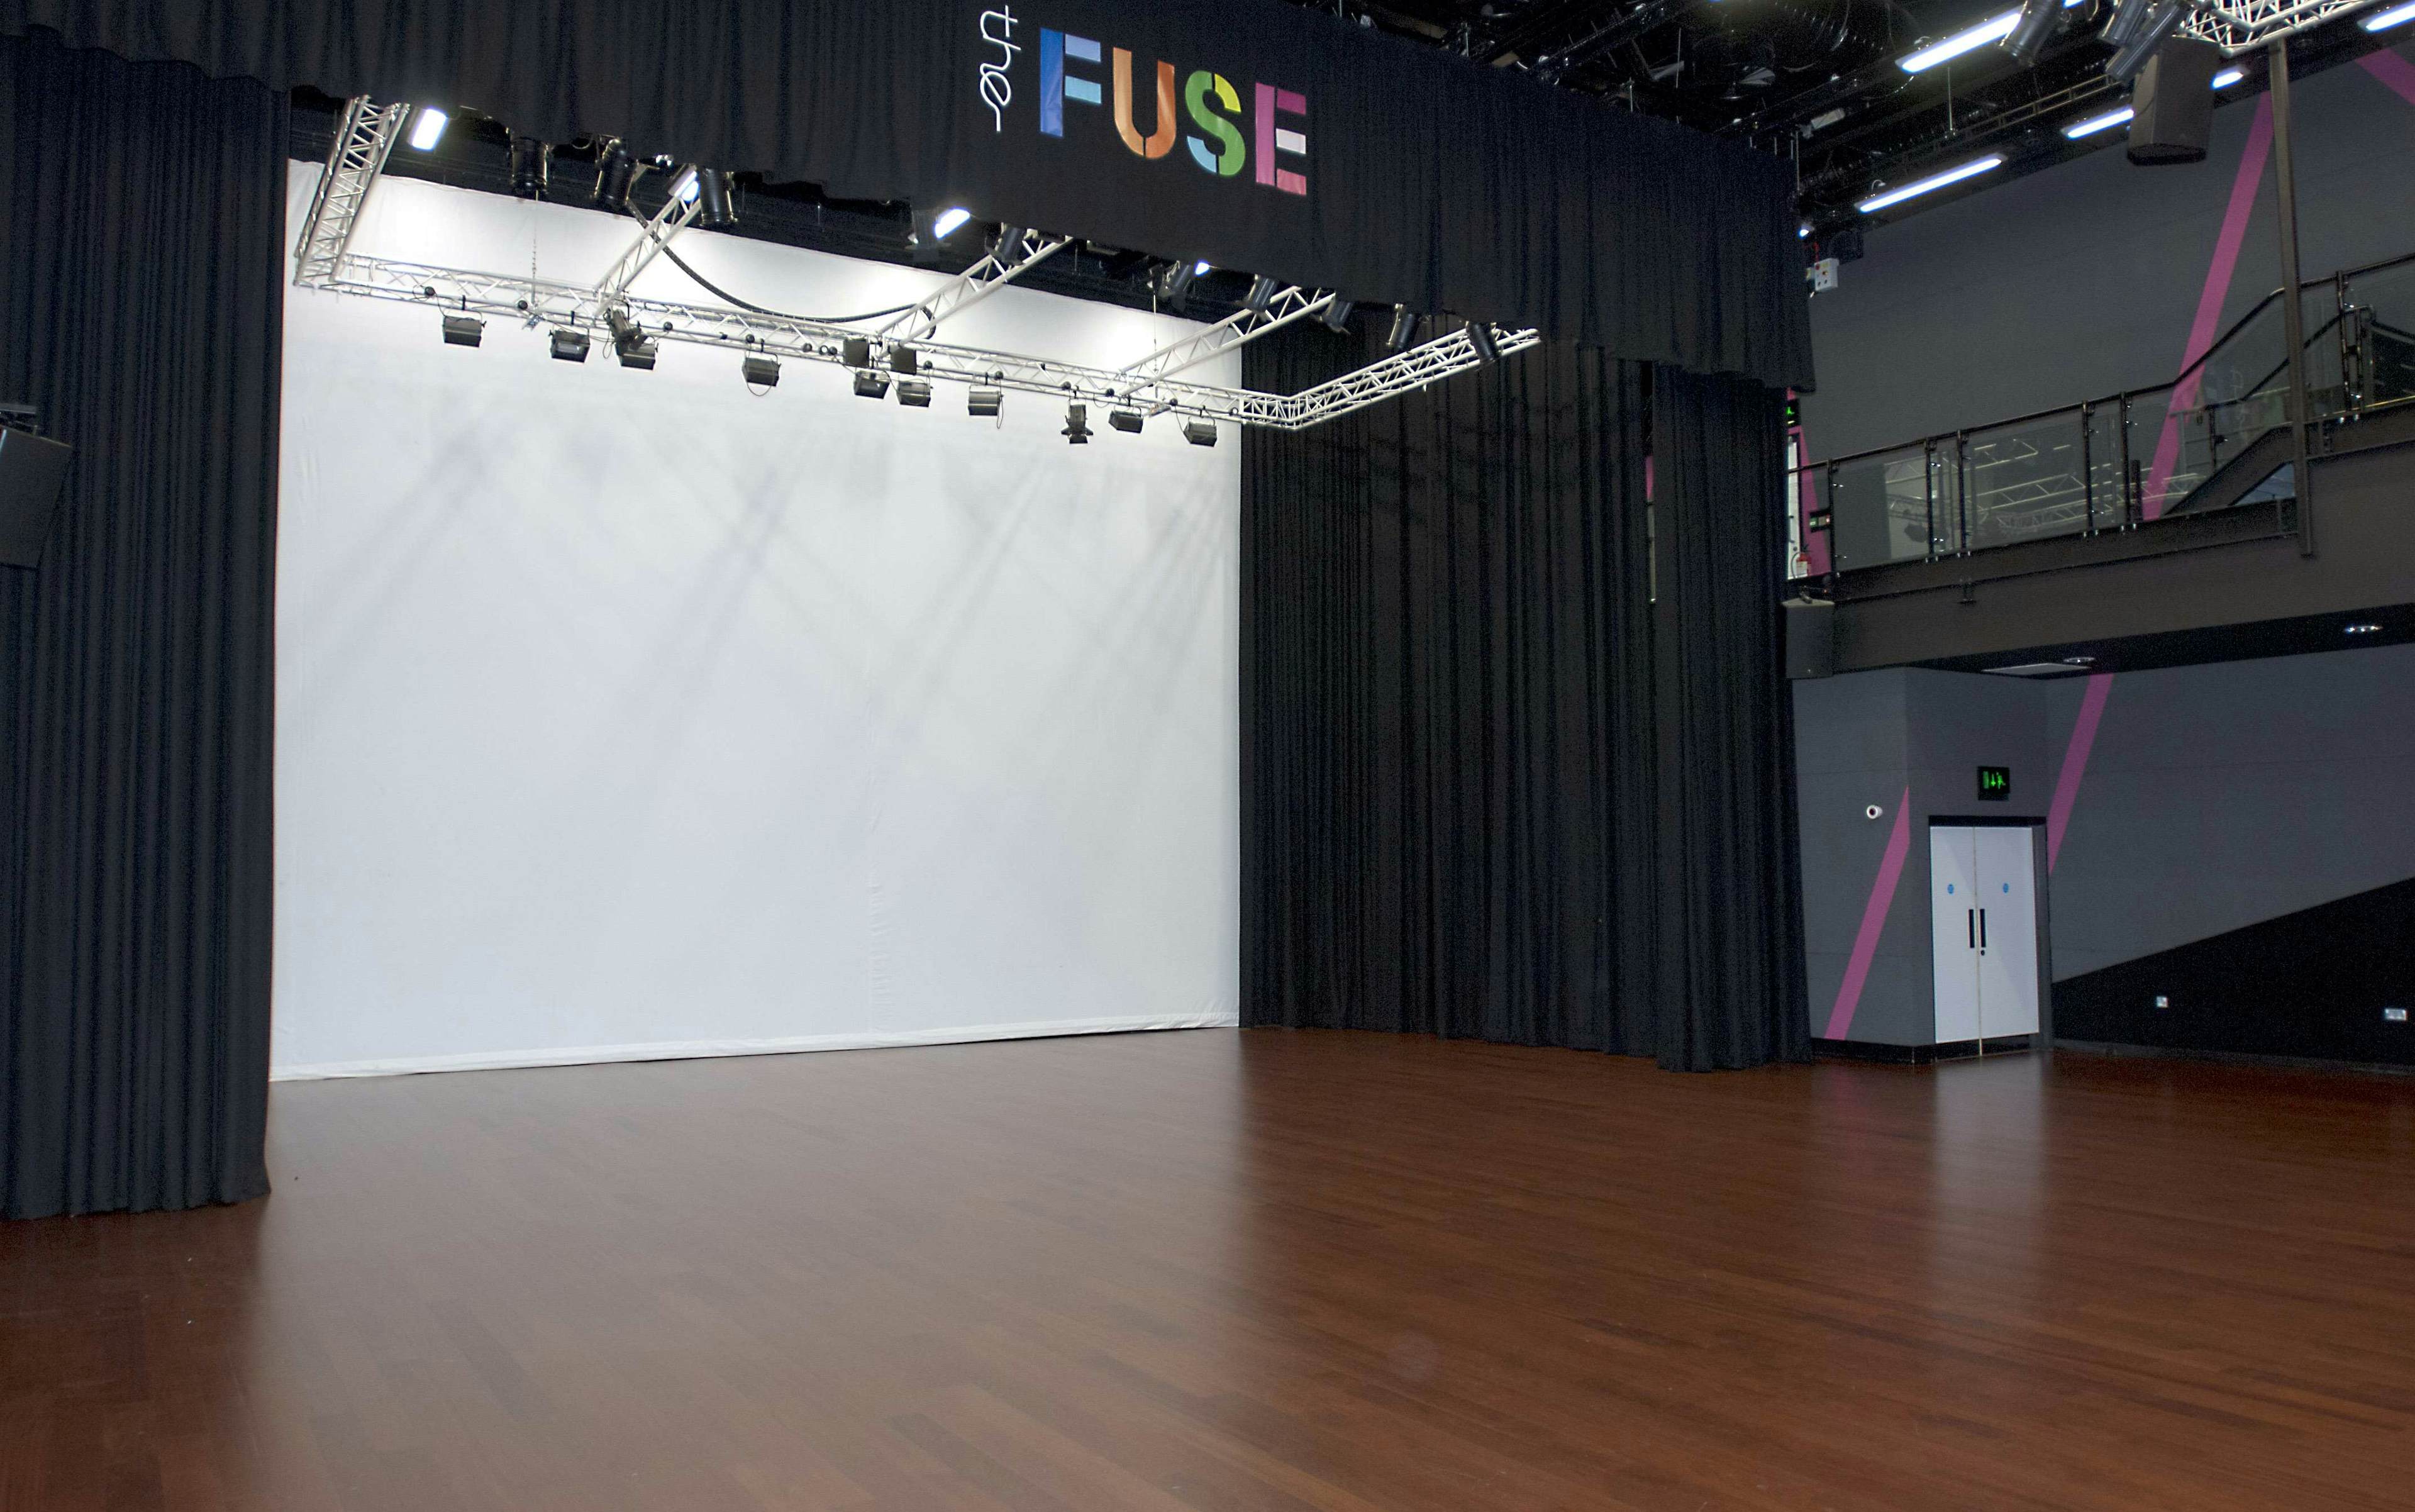 The Fuse - Auditorium image 1